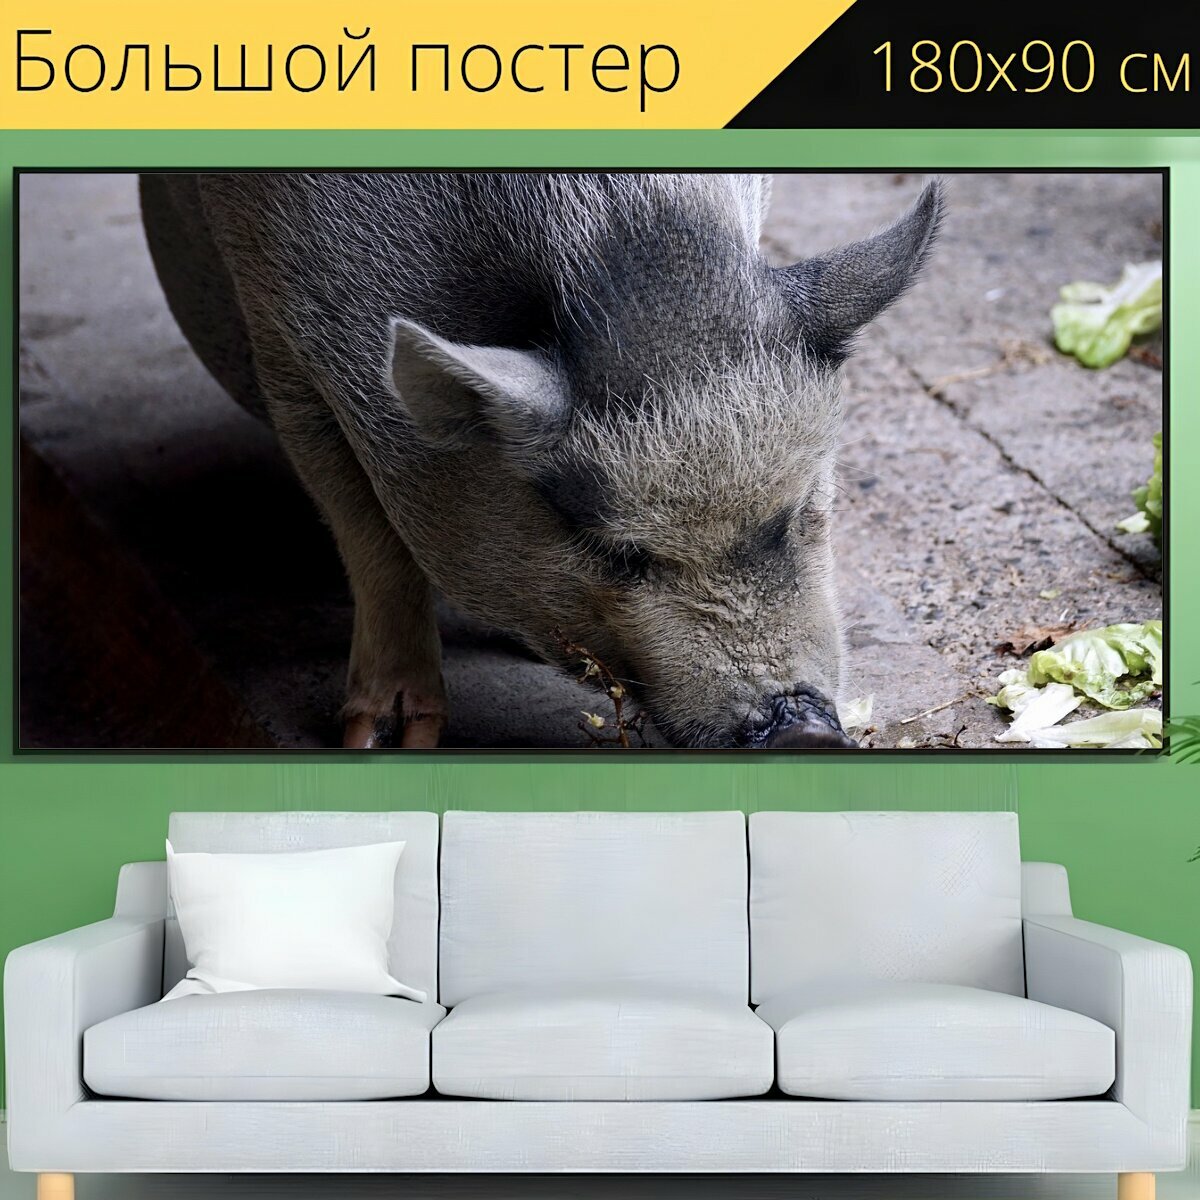 Большой постер "Пузатая свинья, свинья, домашняя свинья" 180 x 90 см. для интерьера